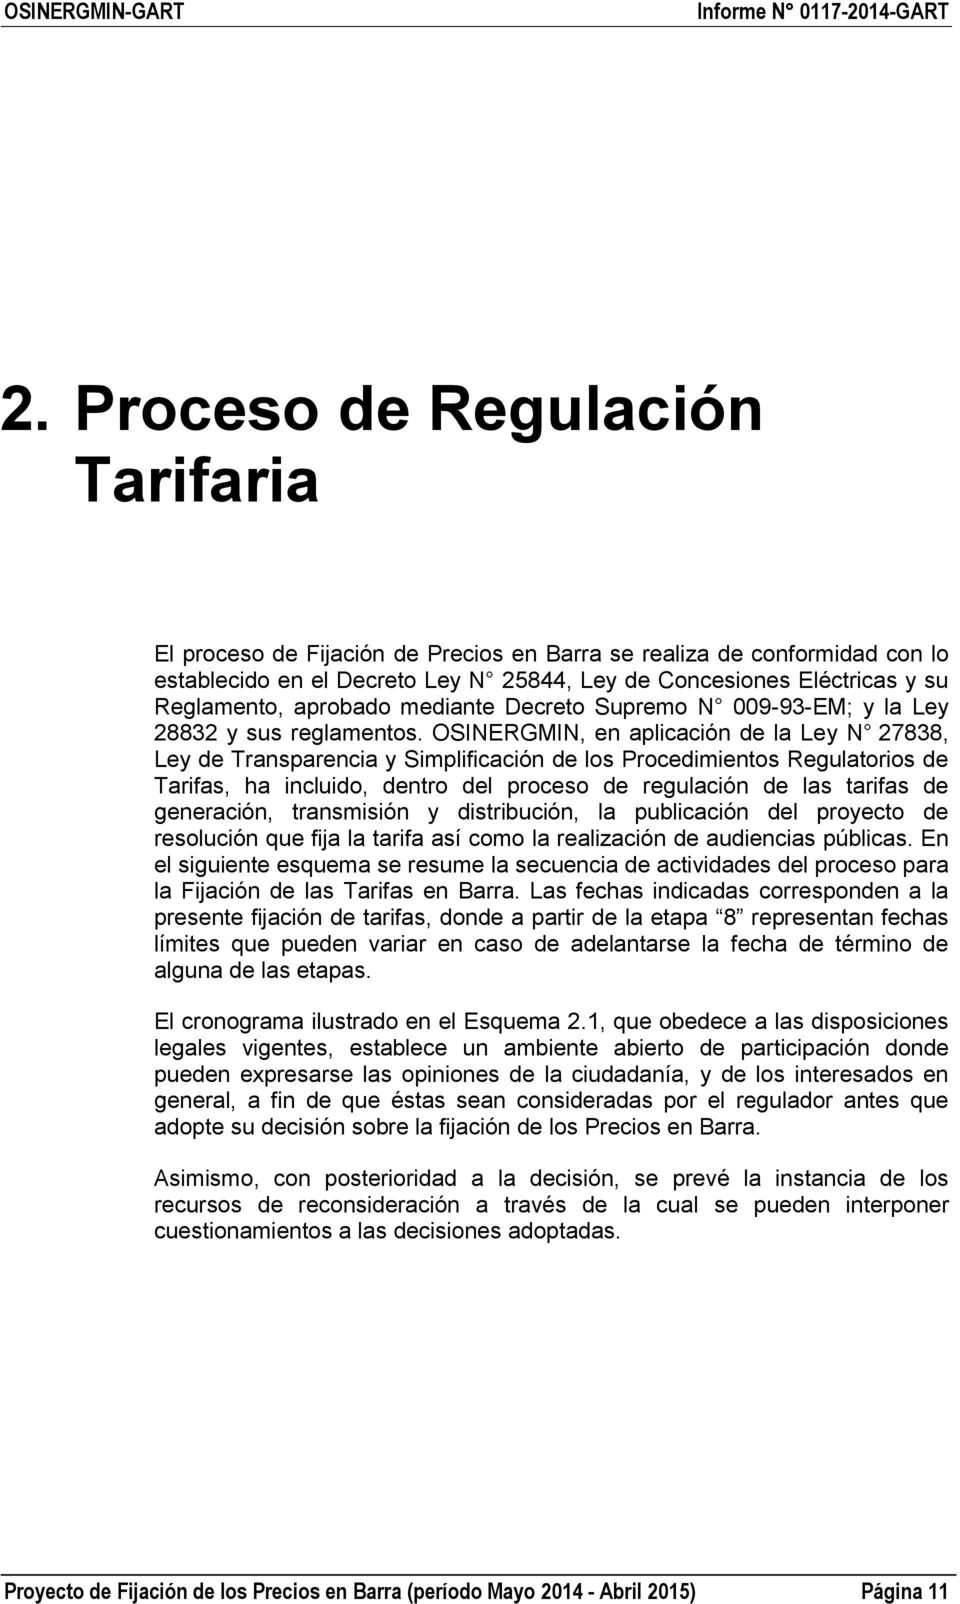 OSINERGMIN, en aplicación de la Ley N 27838, Ley de Transparencia y Simplificación de los Procedimientos Regulatorios de Tarifas, ha incluido, dentro del proceso de regulación de las tarifas de